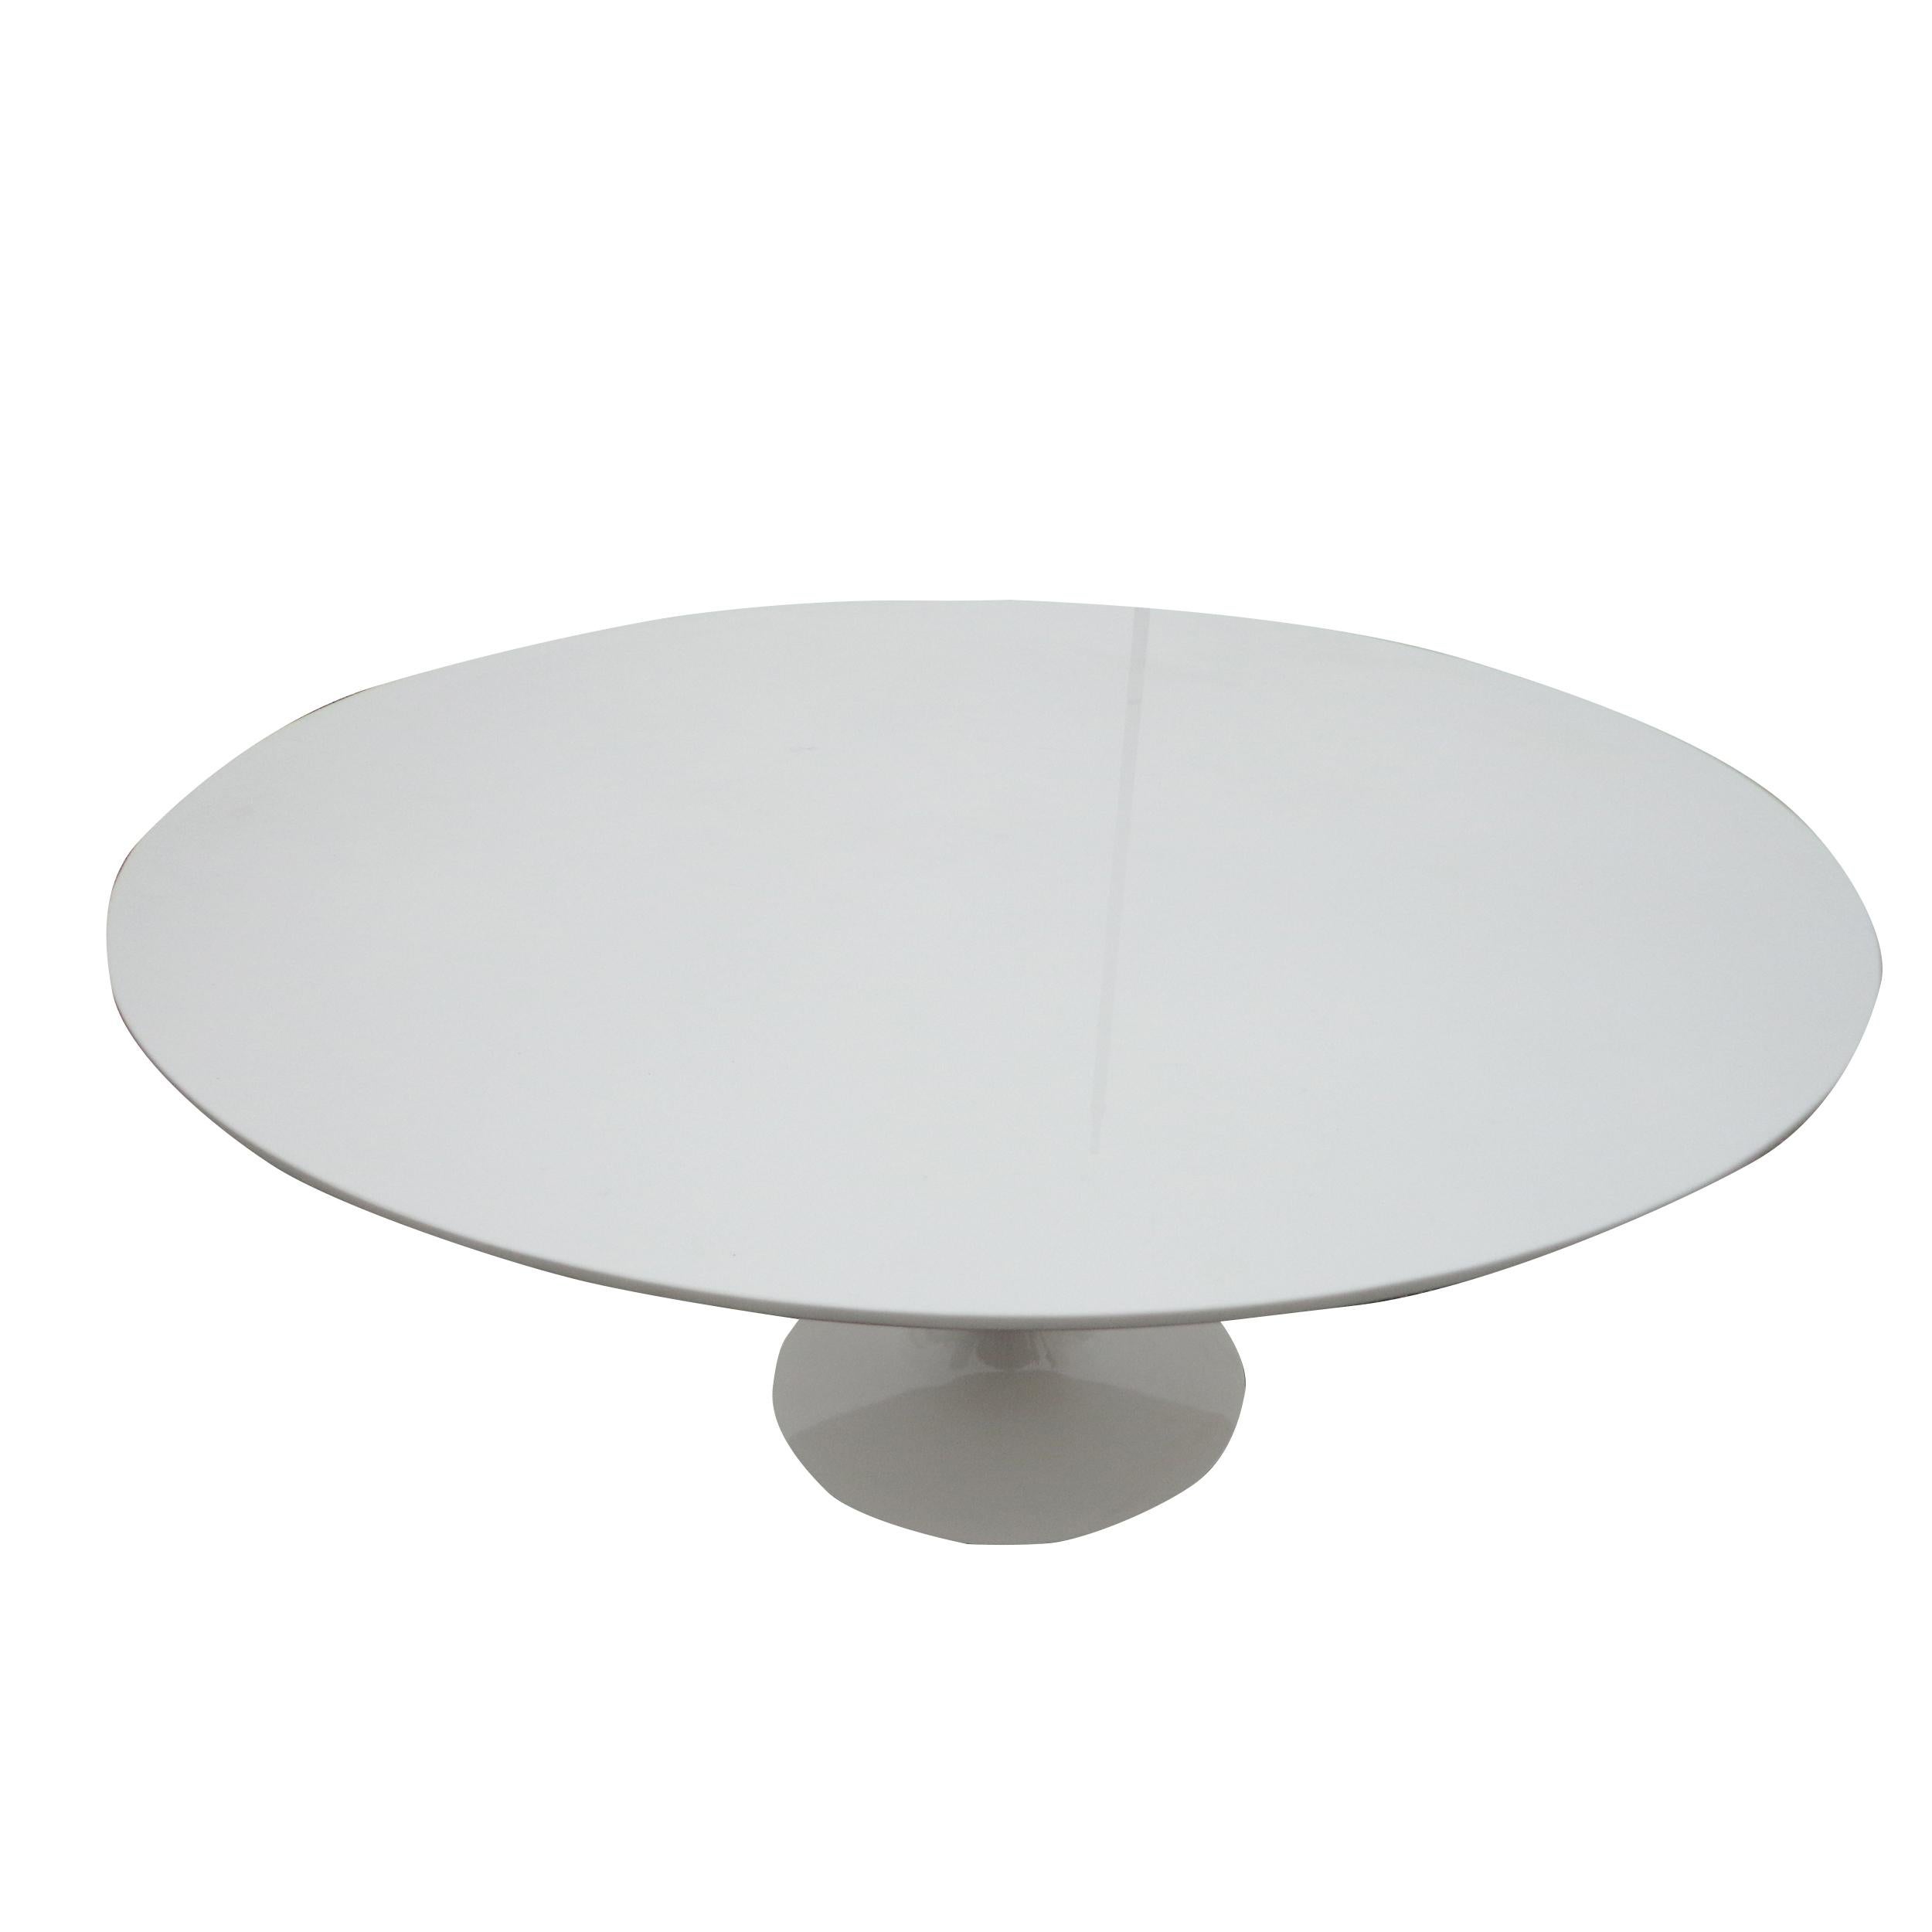 60? Table Knoll Saarinen avec plateau personnalisé

Table vintage classique et iconique conçue par Eero Saarinen pour Knoll International. 
Dessus en céramique sur mesure. En très bon état d'origine, présentant une légère usure cosmétique,